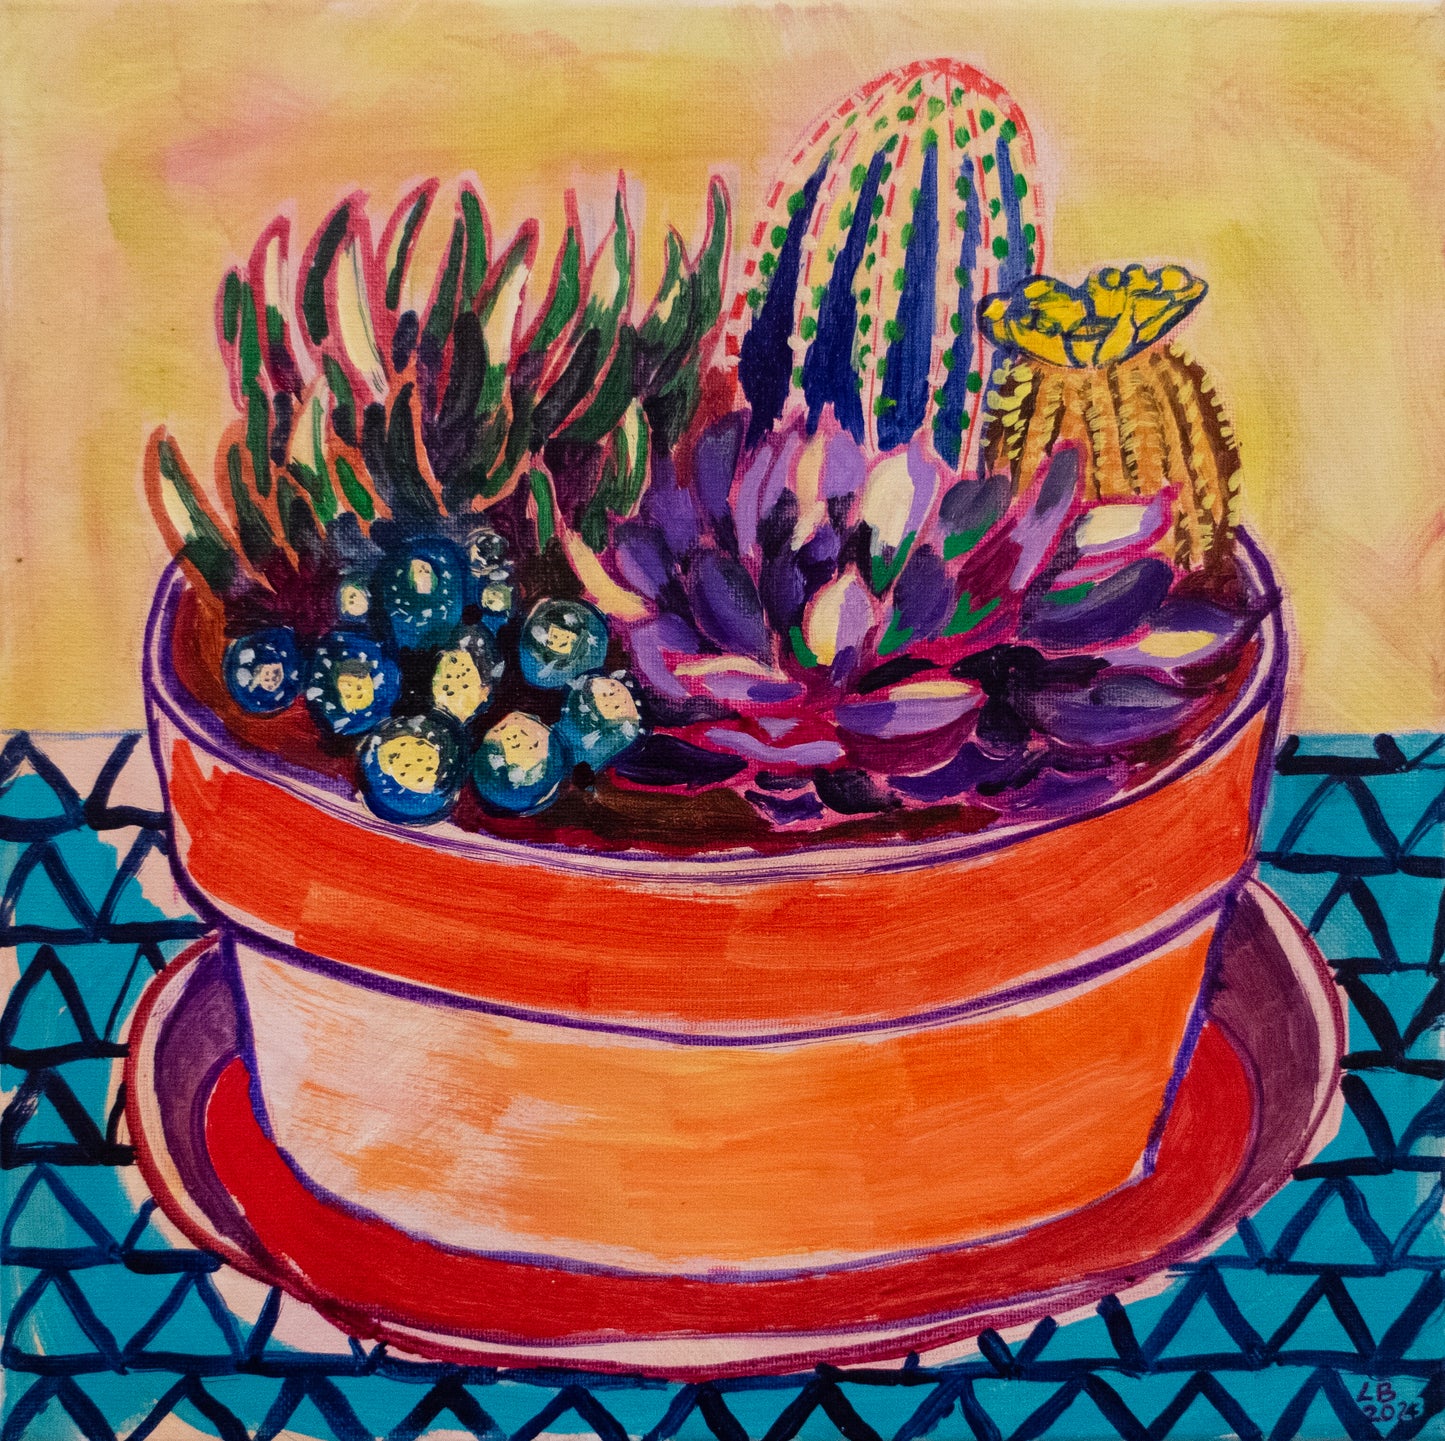 14. Sunrise Cactus